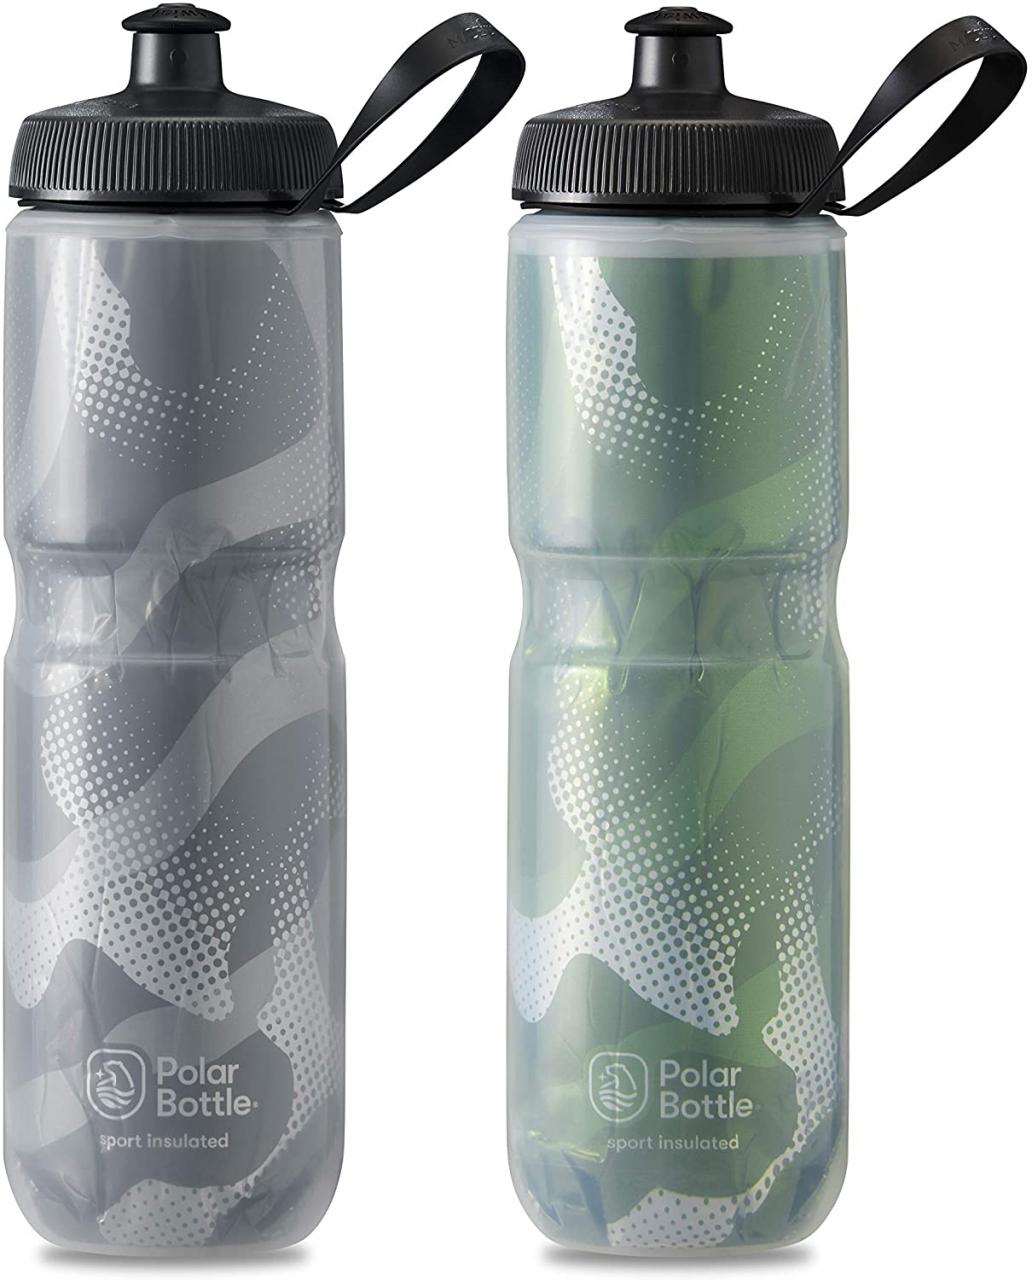 Buy Polar Bottle Sport Insulated Water Bottle - BPA-Free, Sport & Bike  Squeeze Bottle with Handle Online in Vietnam. B08KVDJ499